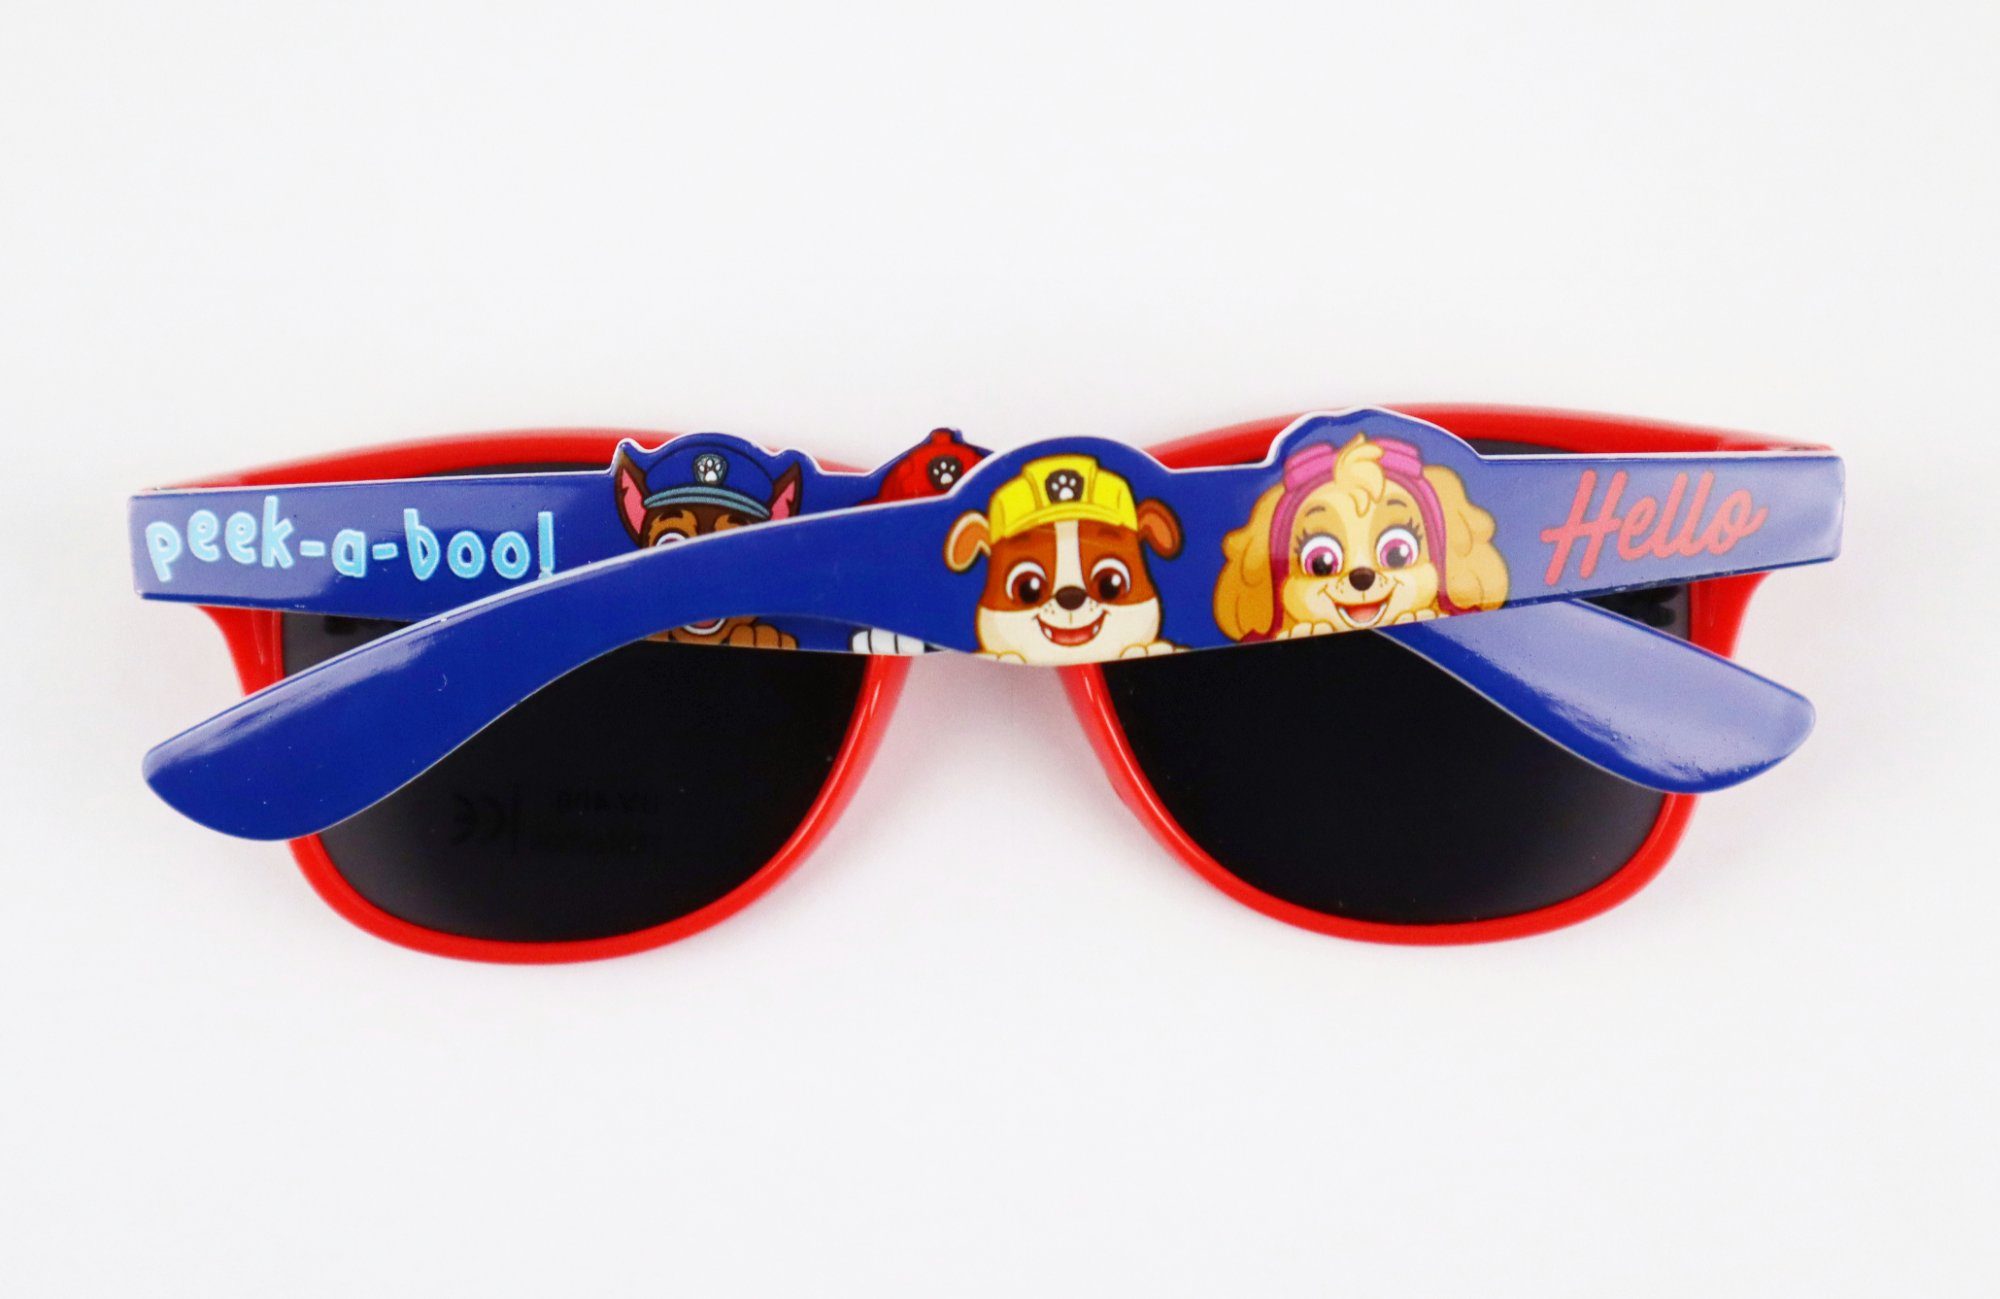 PAW PATROL Sonnenbrille Kinder Jungen Wahl Brille Rot zur Motive verschiedene